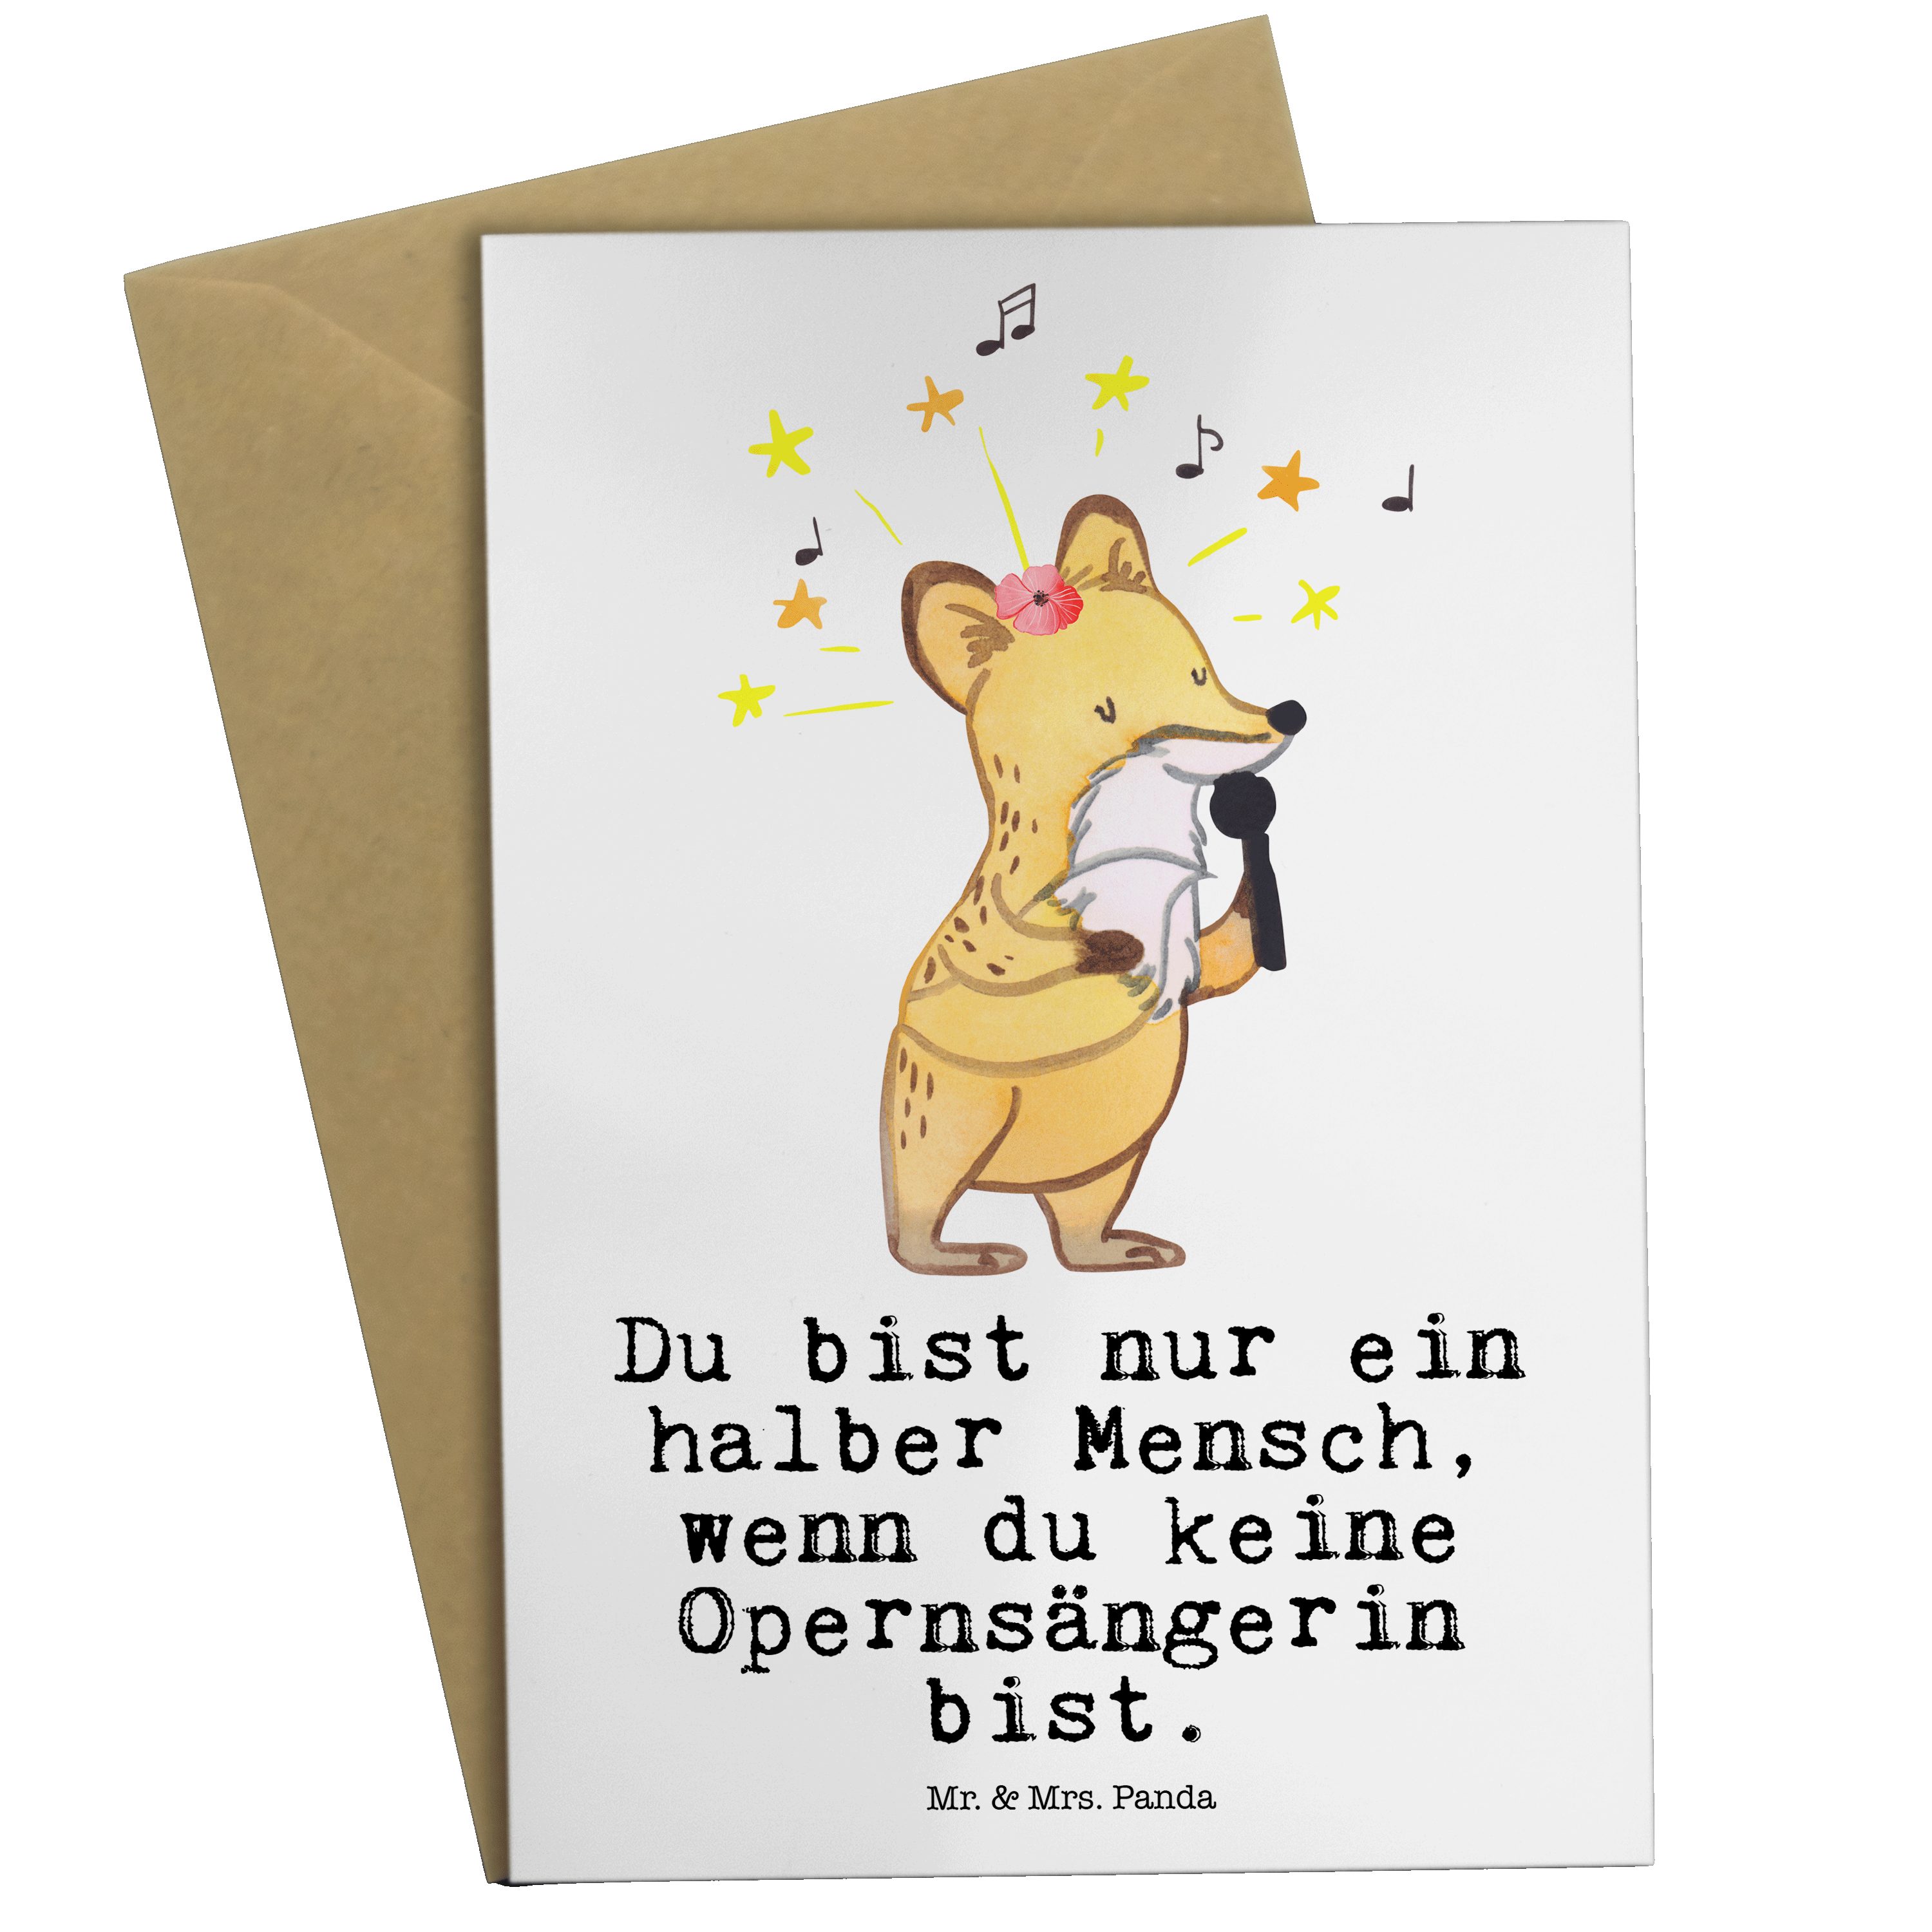 Mr. & Mrs. - Weiß Opernsängerin Geburtstagskarte, mit Herz Panda Grußkarte Hochzeits - Geschenk